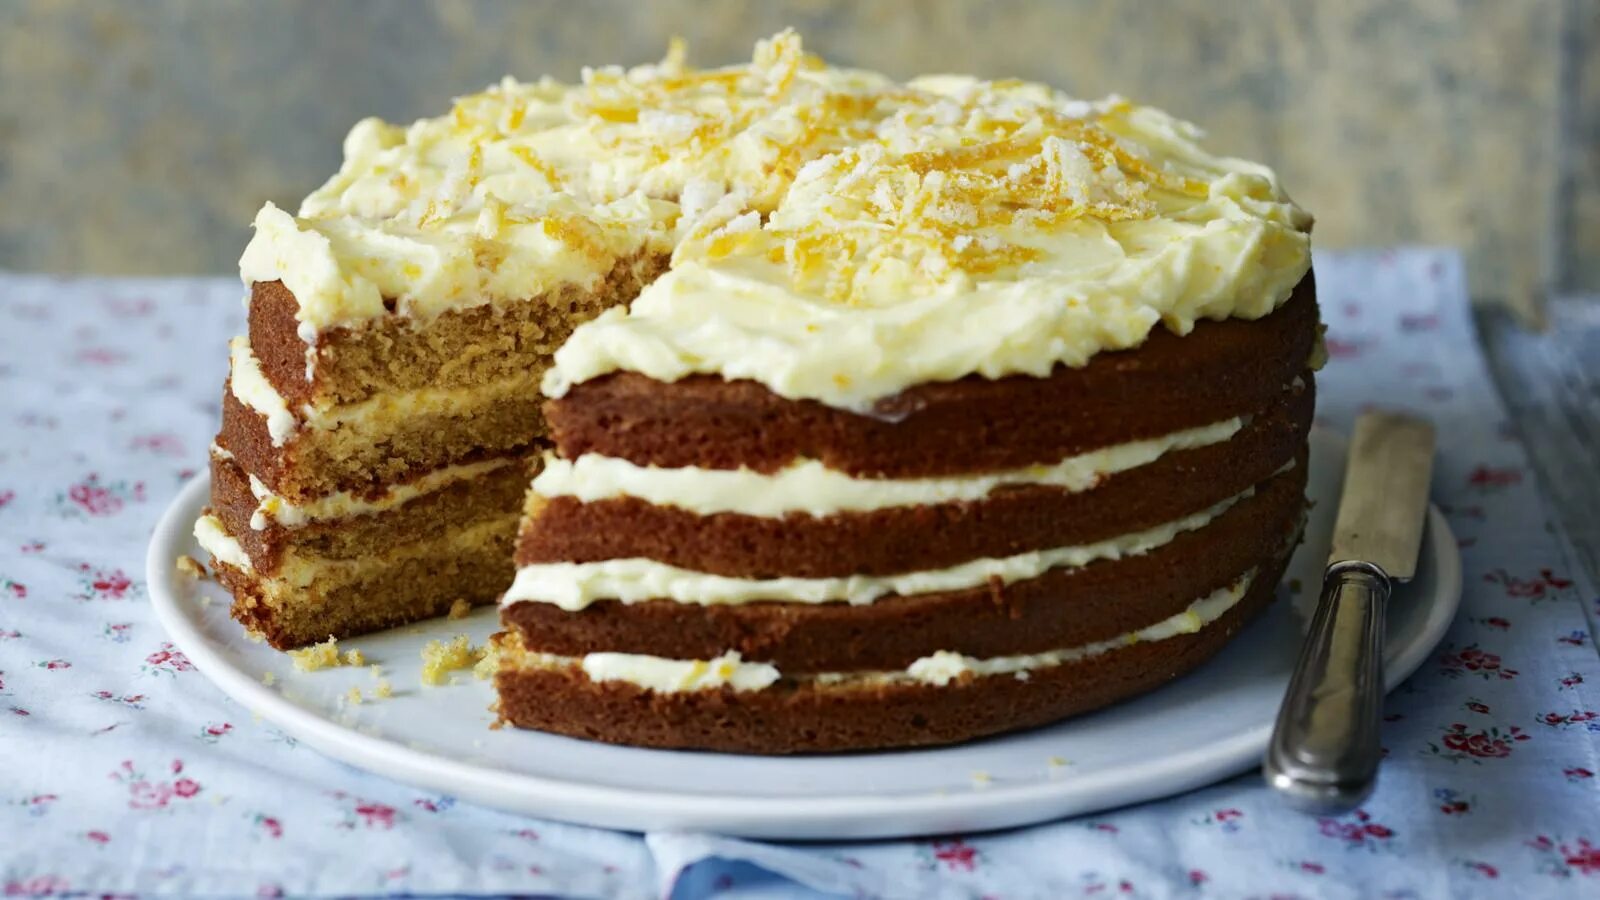 English cake. Слоеный бисквит. Французский торт с апельсином. Шотландский торт. Молочно-апельсиновый торт из печенья.